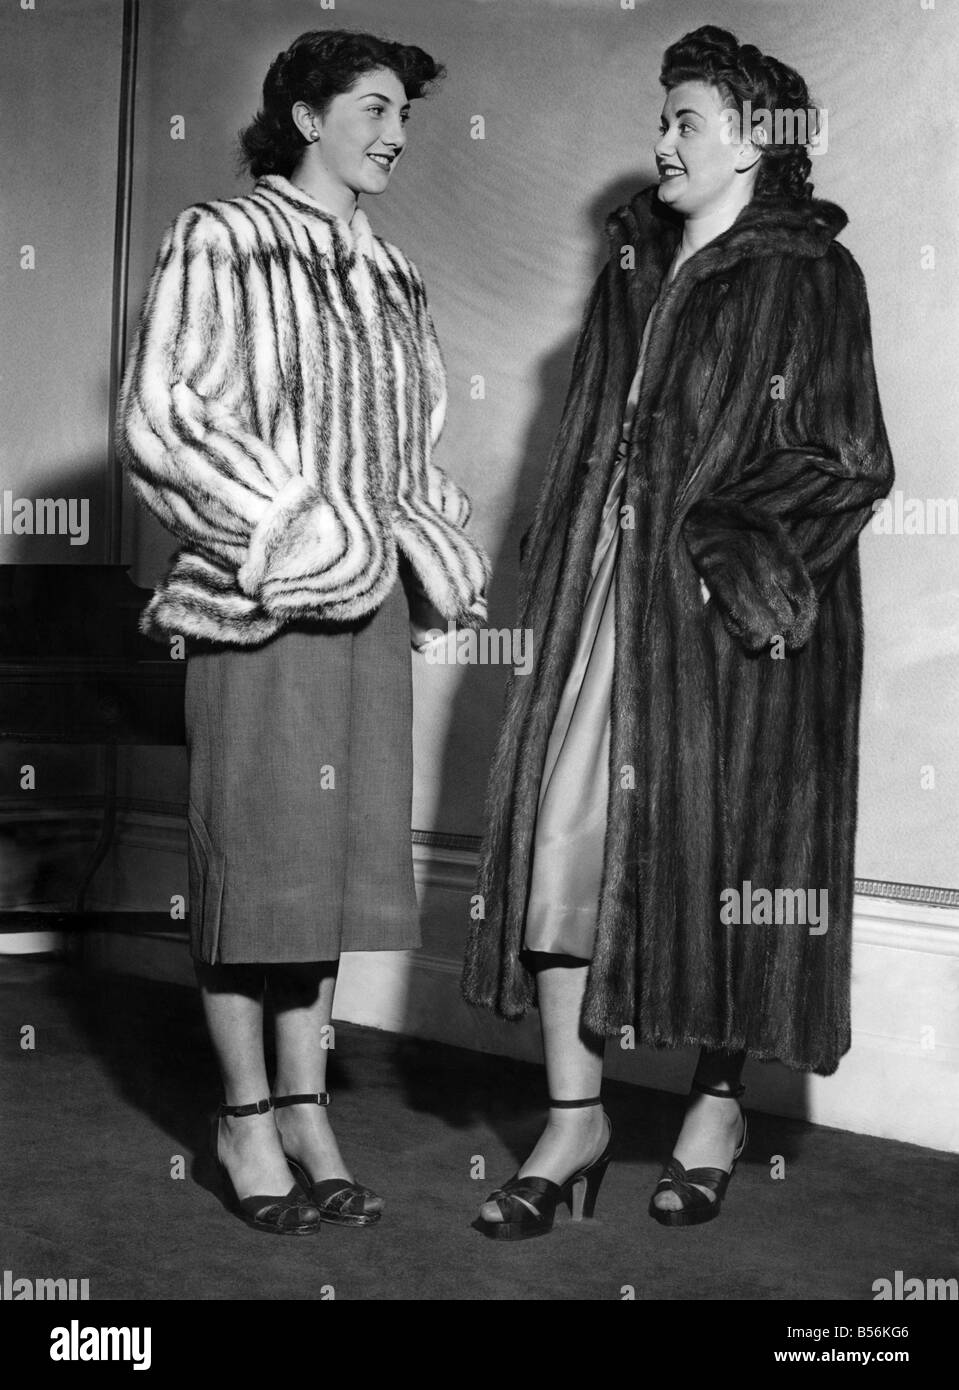 Jane Farrell (droite) dans un manteau de vison du labrador avec un retour d'ondulation, tourner vers le bas des manches et col marin. Marjorie Roberts en Banque D'Images